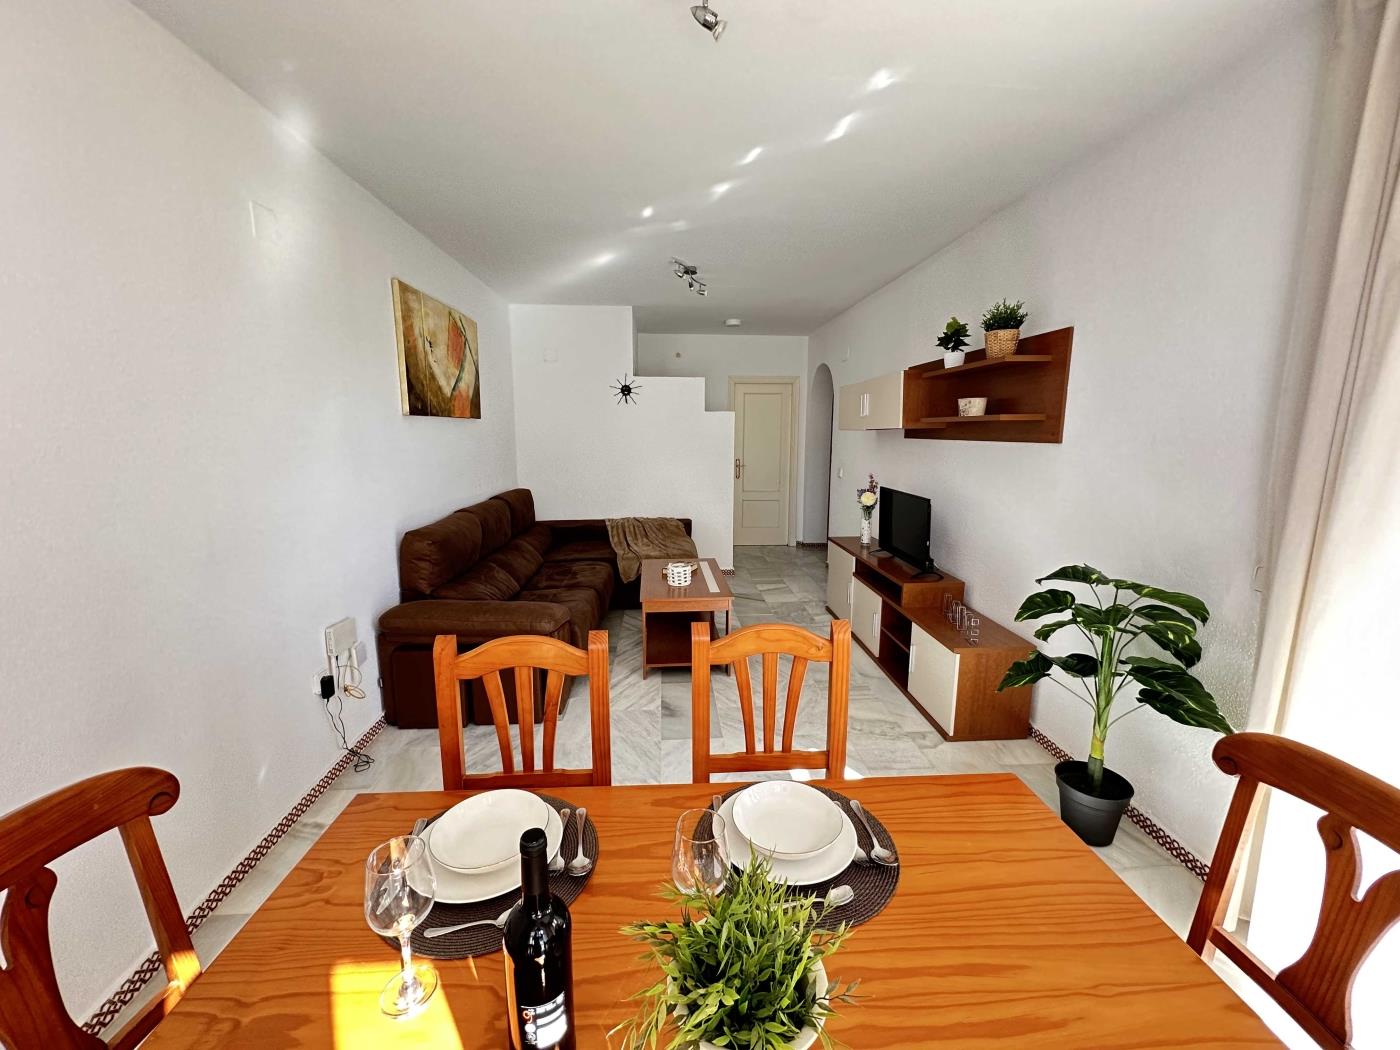 Ref. P2. Two bedroom first floor apartment in Chiclana de la Frontera